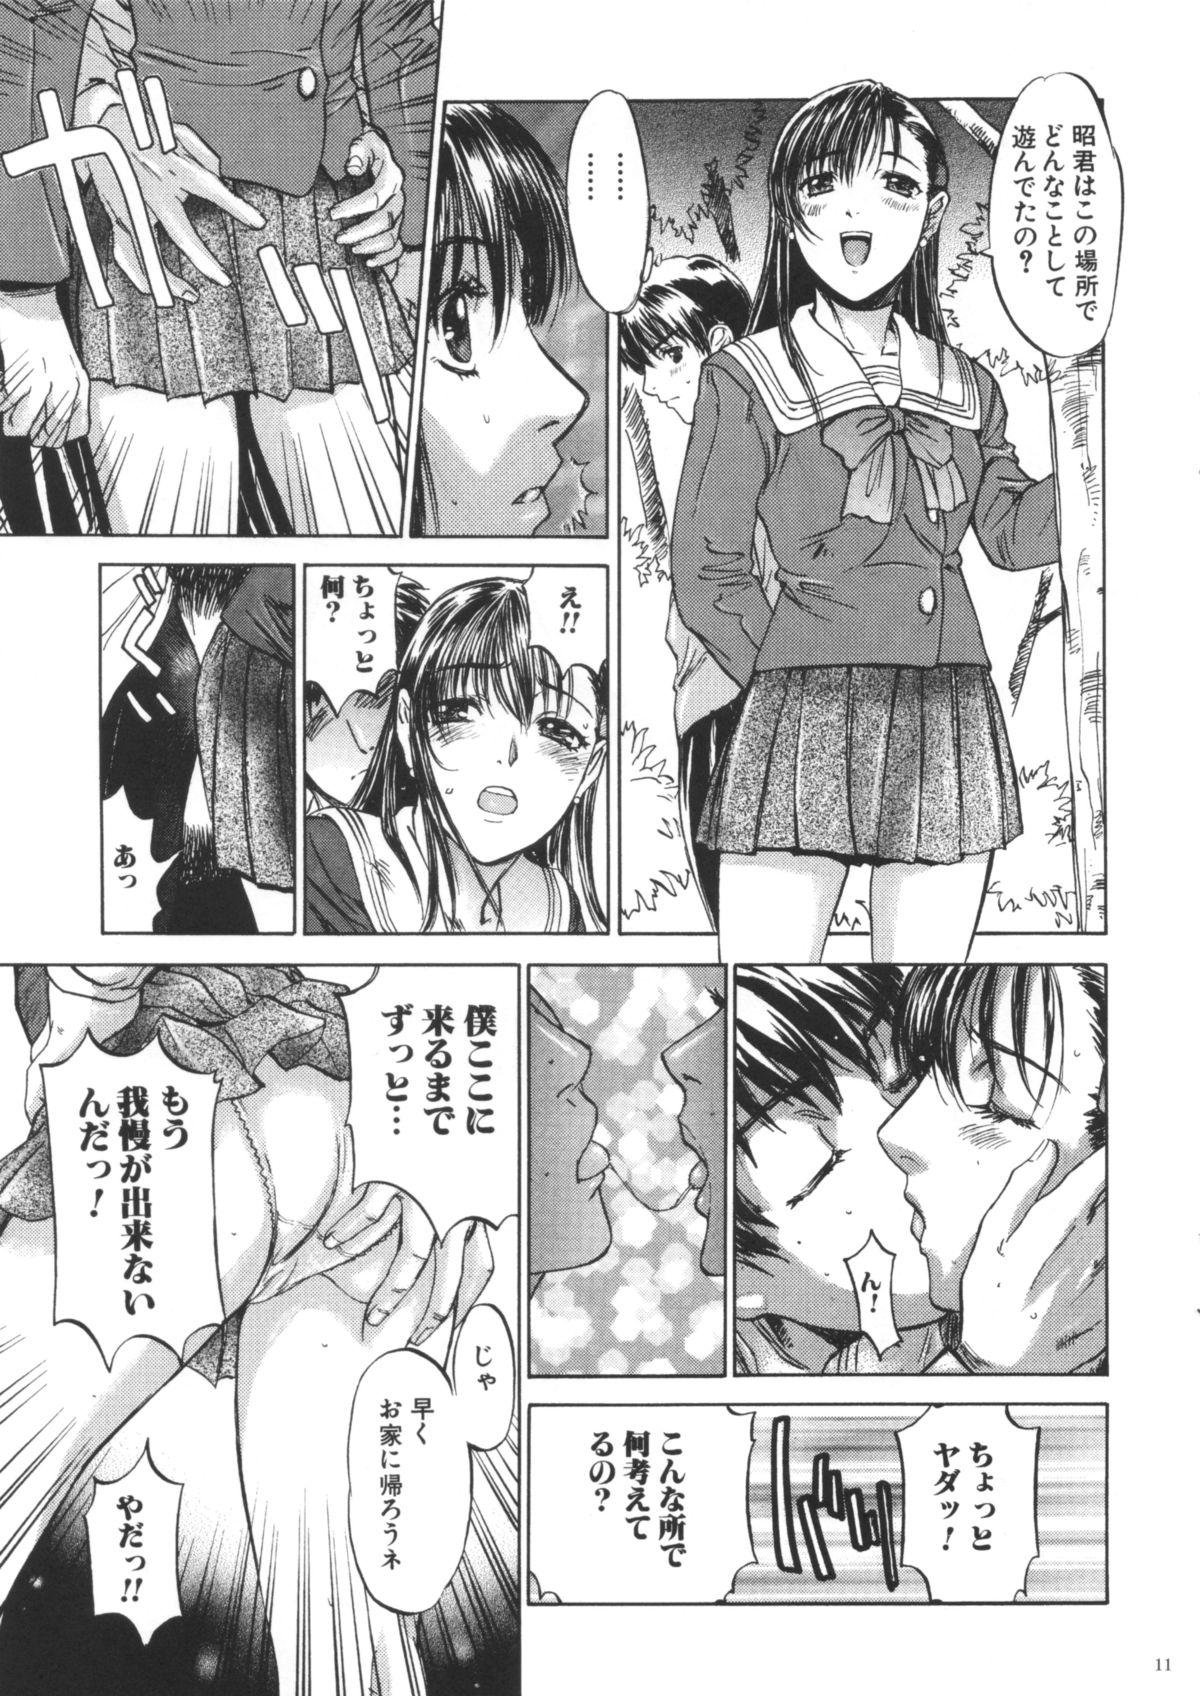 Bunduda Boku Shika Shiranai Oneesan na Kanojo no Koto 18 Porn - Page 10